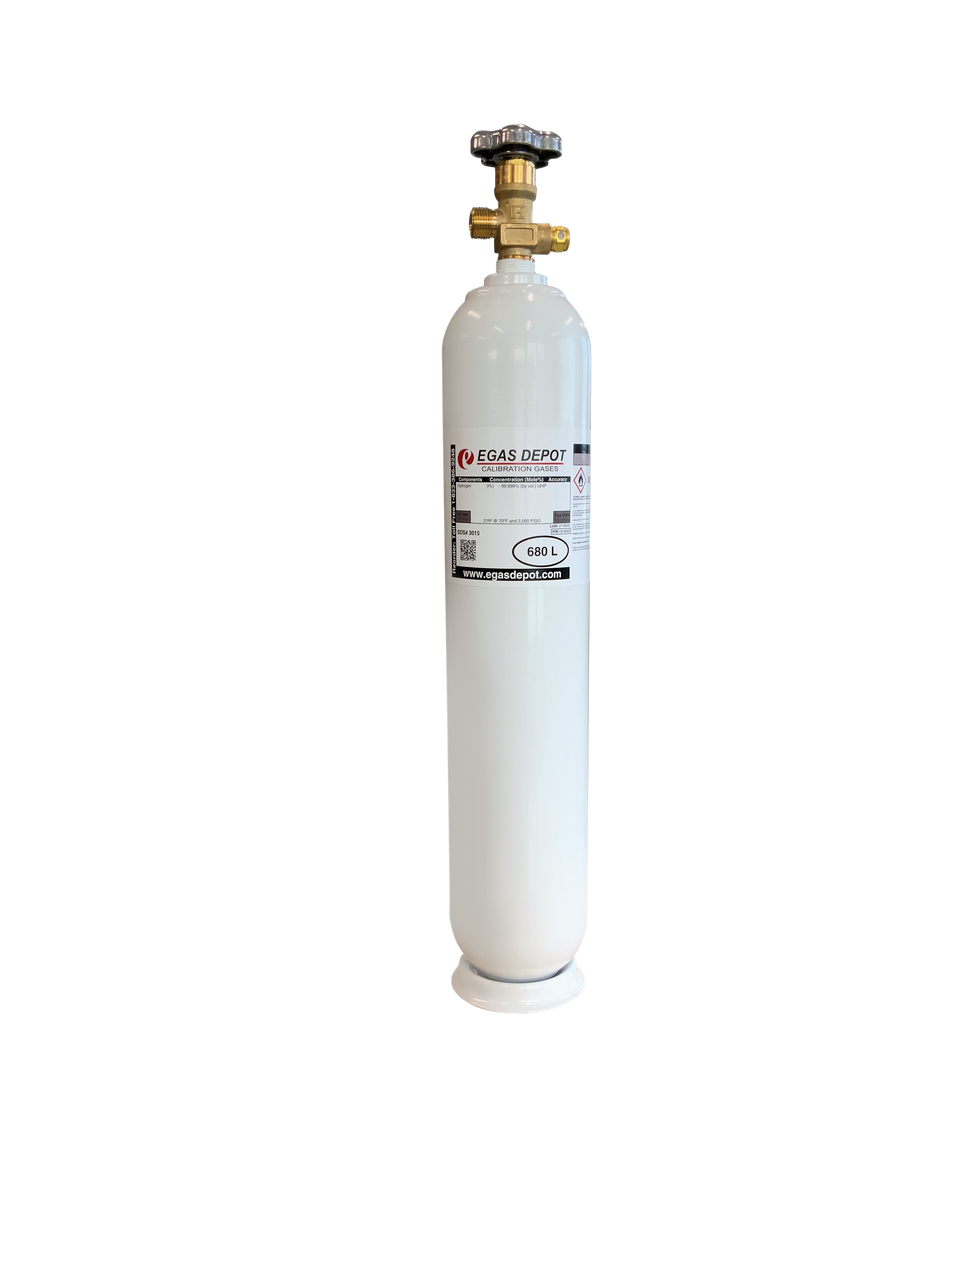 680 Liter-Carbon Dioxide 50 ppm/ Nitrogen